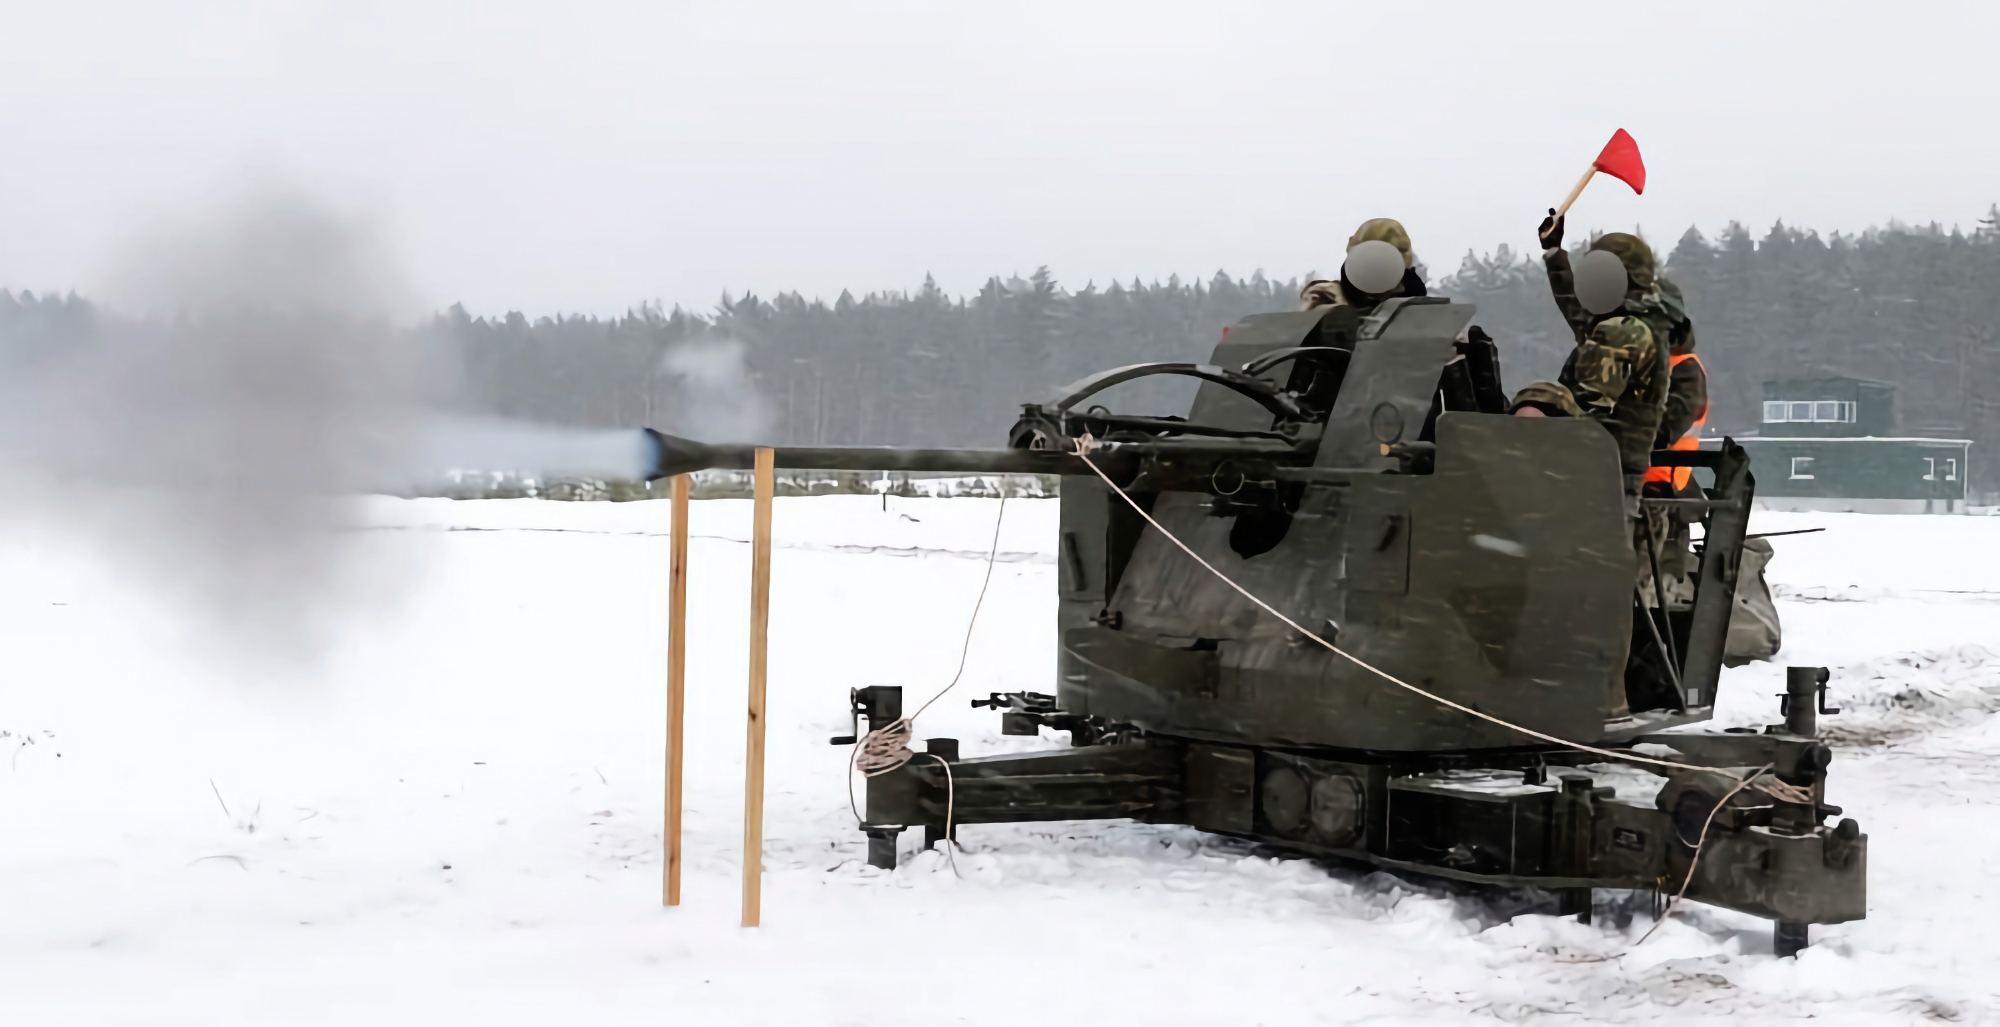 Ukraina otrzymuje partię szwedzkich dział przeciwlotniczych L-70, które mogą niszczyć cele powietrzne na odległość do 12,5 km